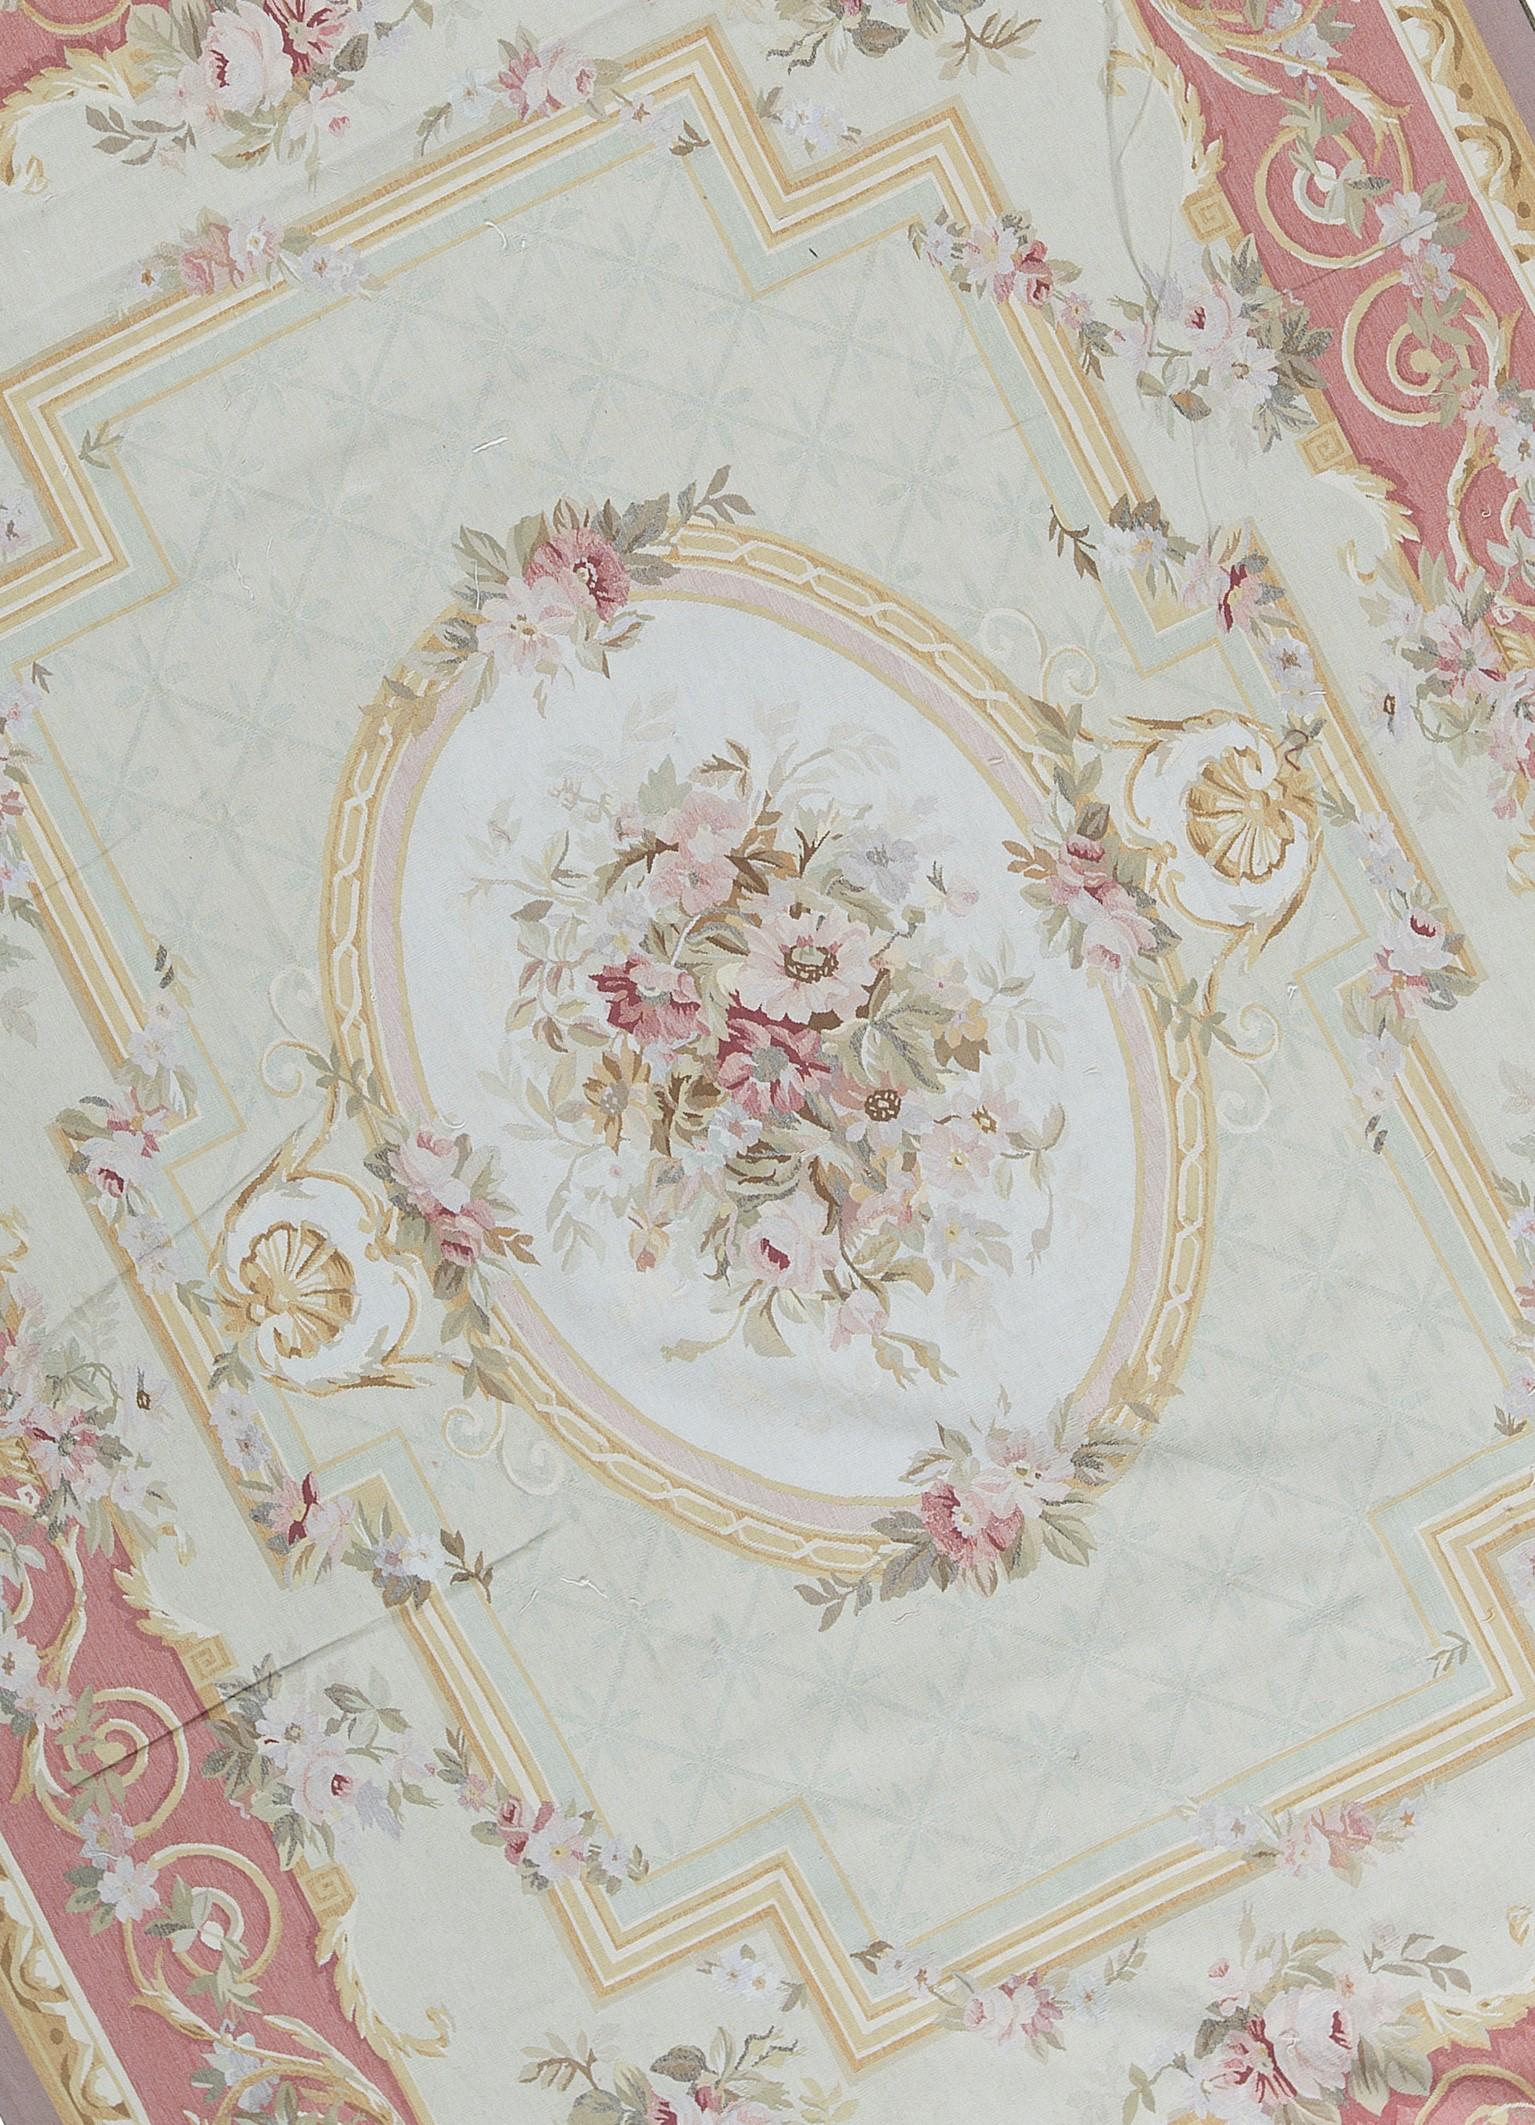 Recréation tissée à la main du classique tapis français d'Aubusson à tissage plat que l'on trouve dans les plus belles maisons et palais depuis la fin du 17e siècle. Taille 9' 1